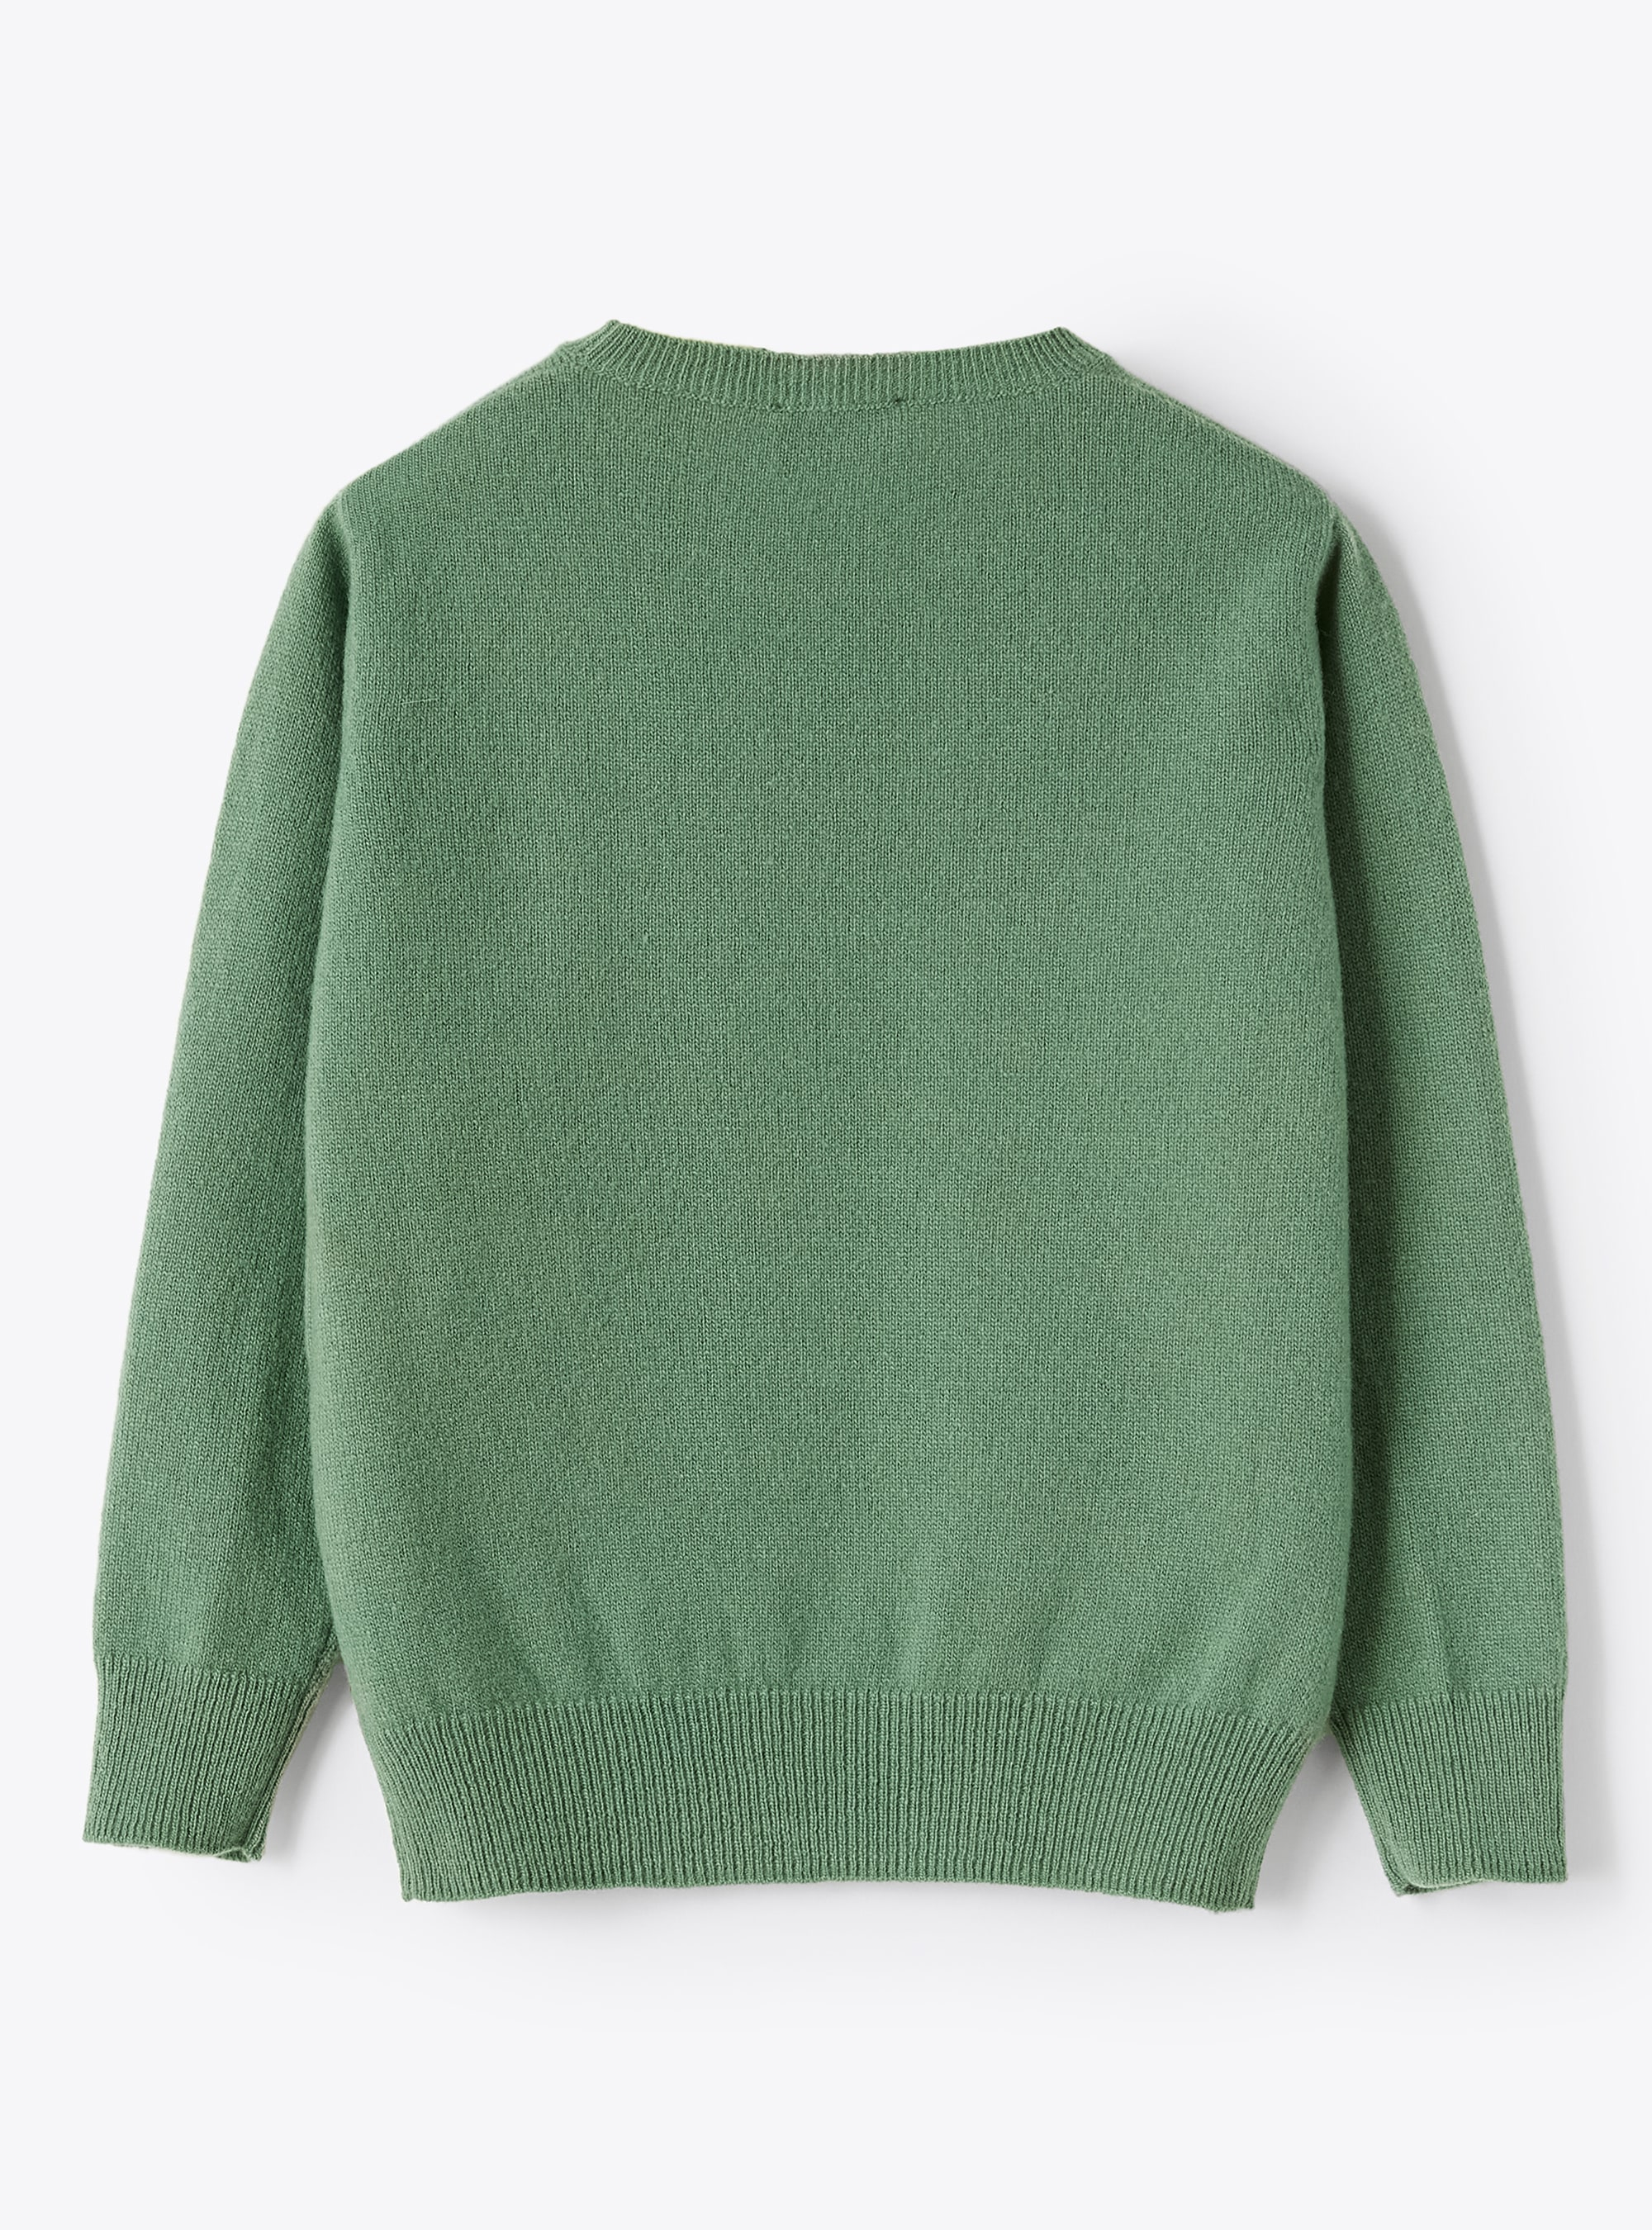 Wollpullover mit Rundhalsausschnitt grün - Grün | Il Gufo